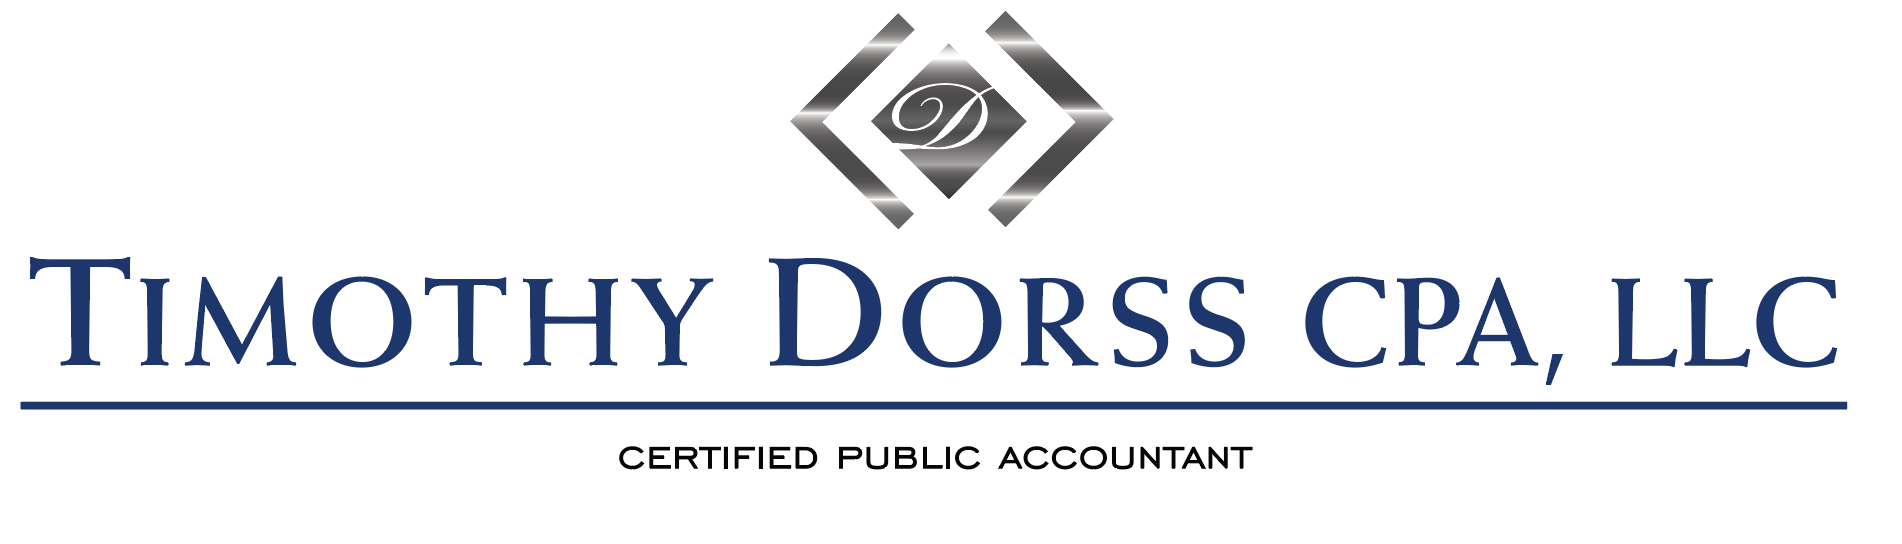 Timothy Dorss CPA, LLC